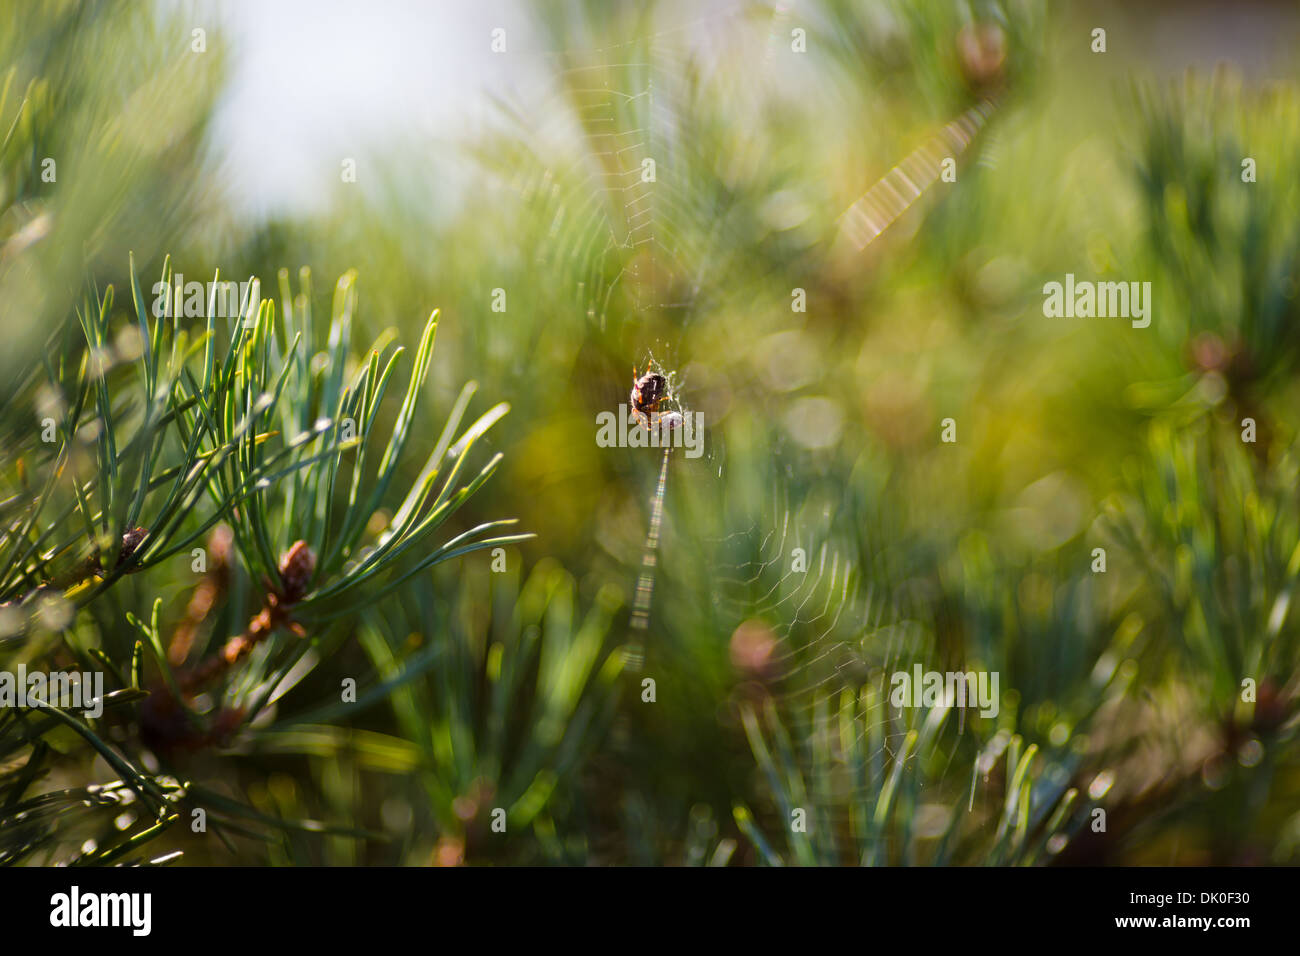 Cruceta en web con mariquita en un árbol de pino, bosque de Ashdown, REINO UNIDO Foto de stock